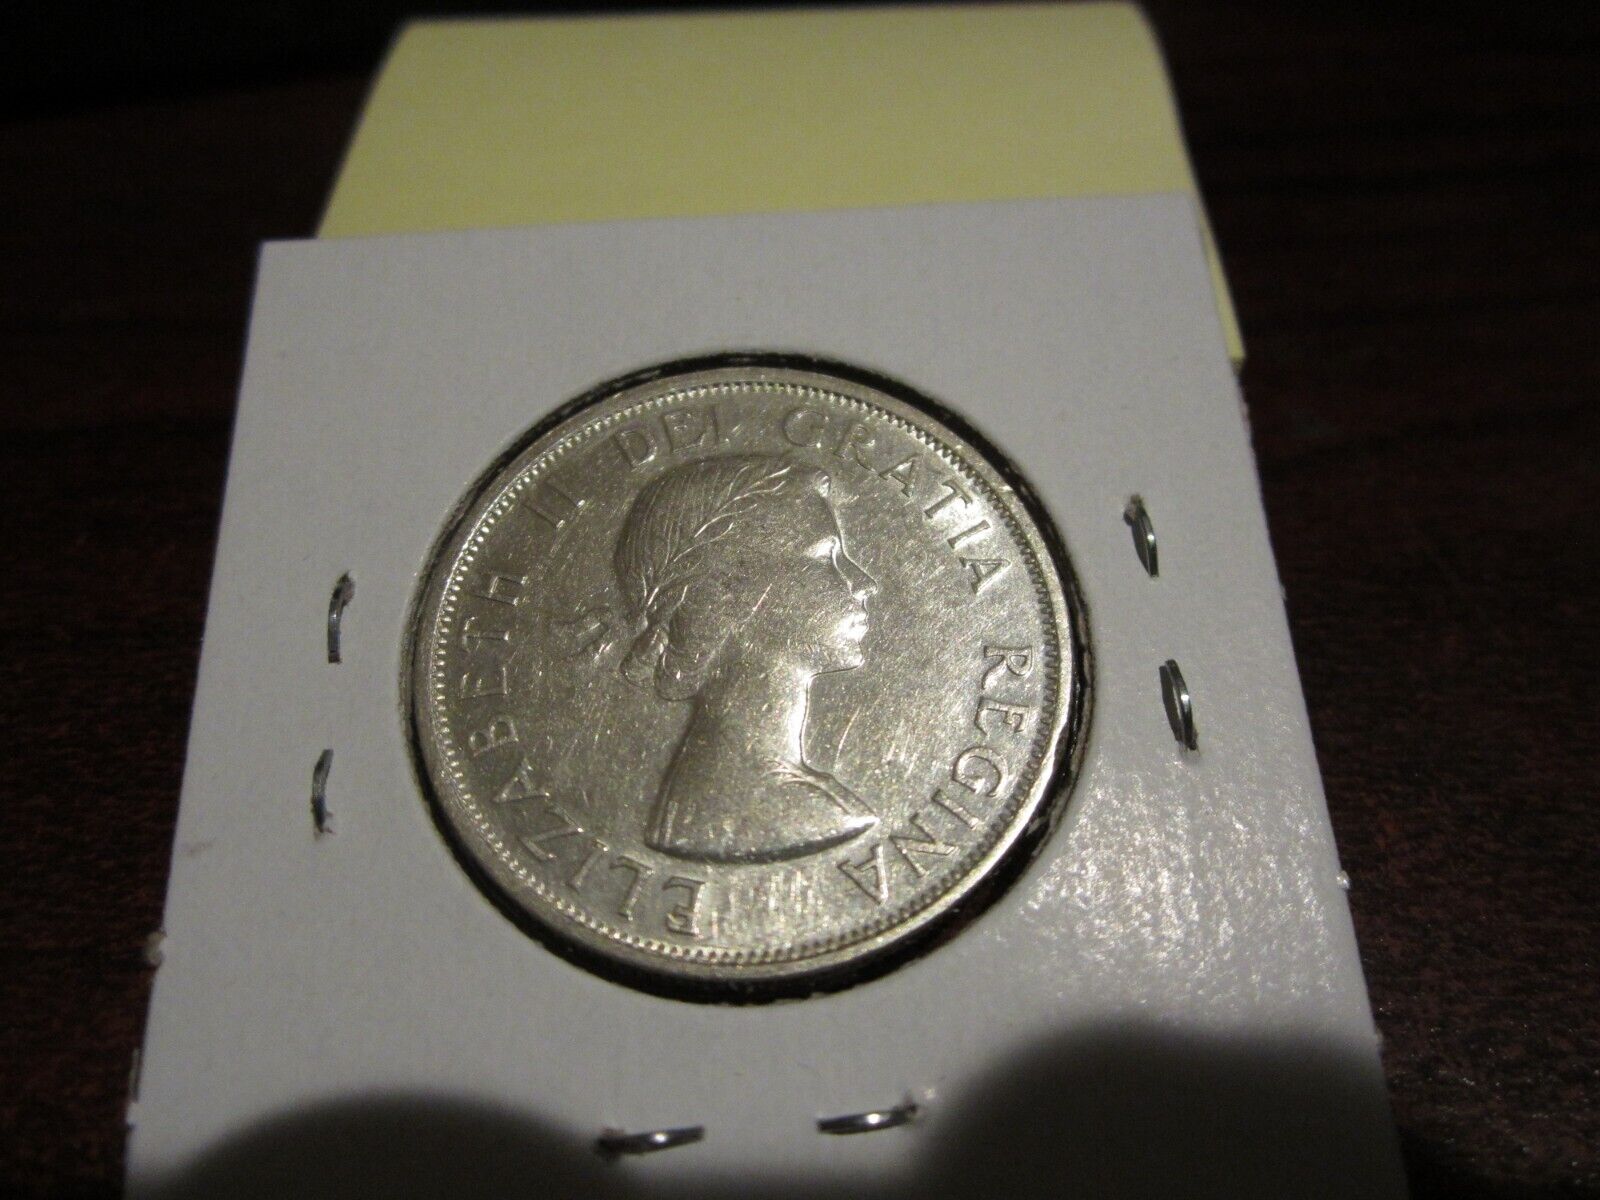 1955 - Canada silver half dollar - Canadian 50 cent